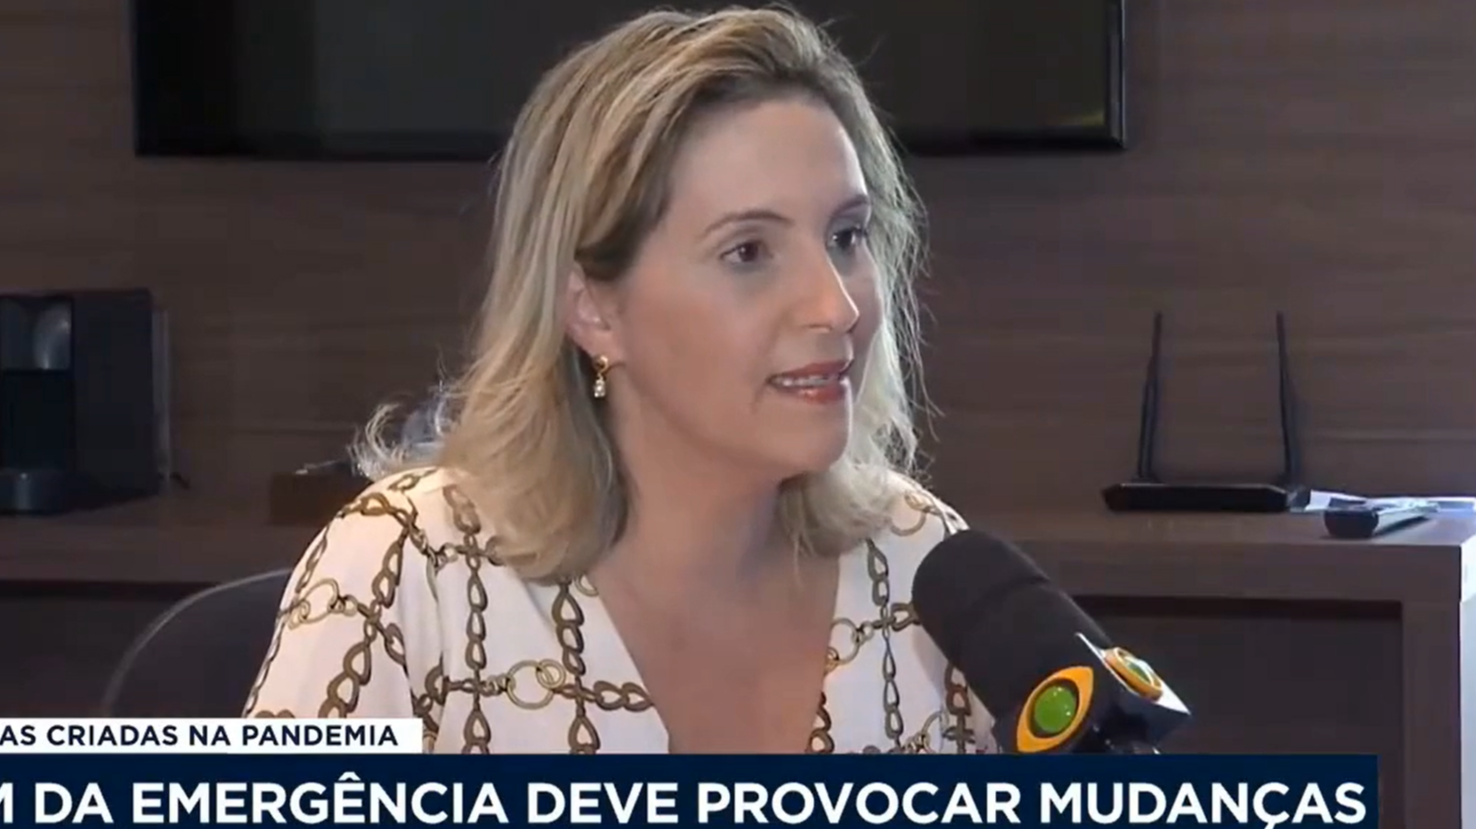 Entrevista na TV Band Cidade – Fim da Emergência deve provocar mudanças – Com Daniela Bibiano.